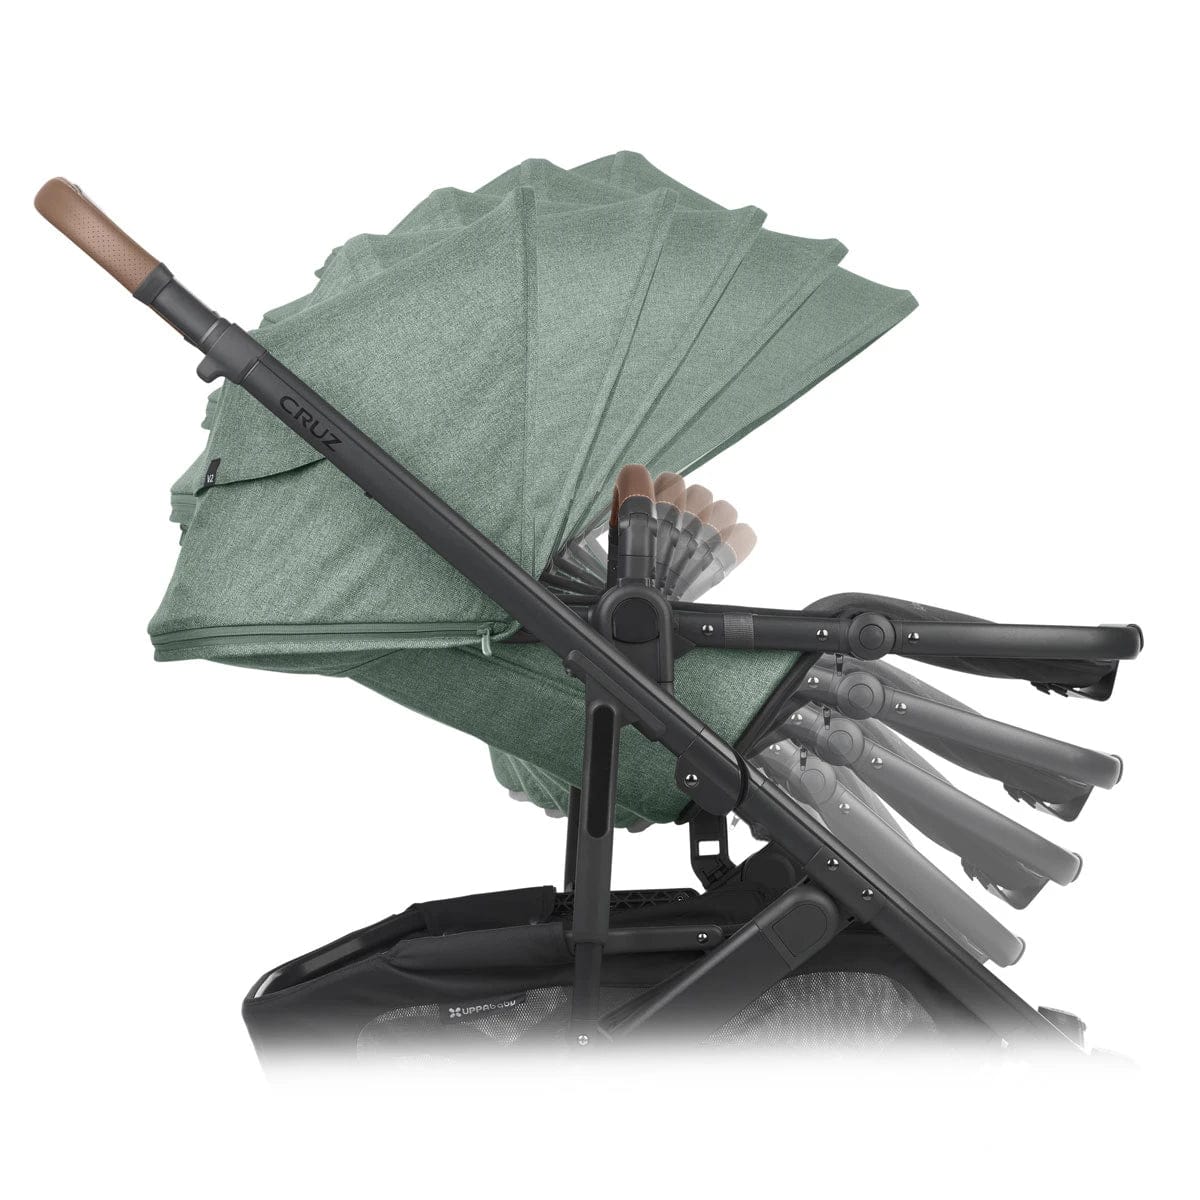 UPPAbaby stroller UPPAbaby CRUZ V2 Stroller - Gwen (Green Melange/Carbon/Saddle Leather)